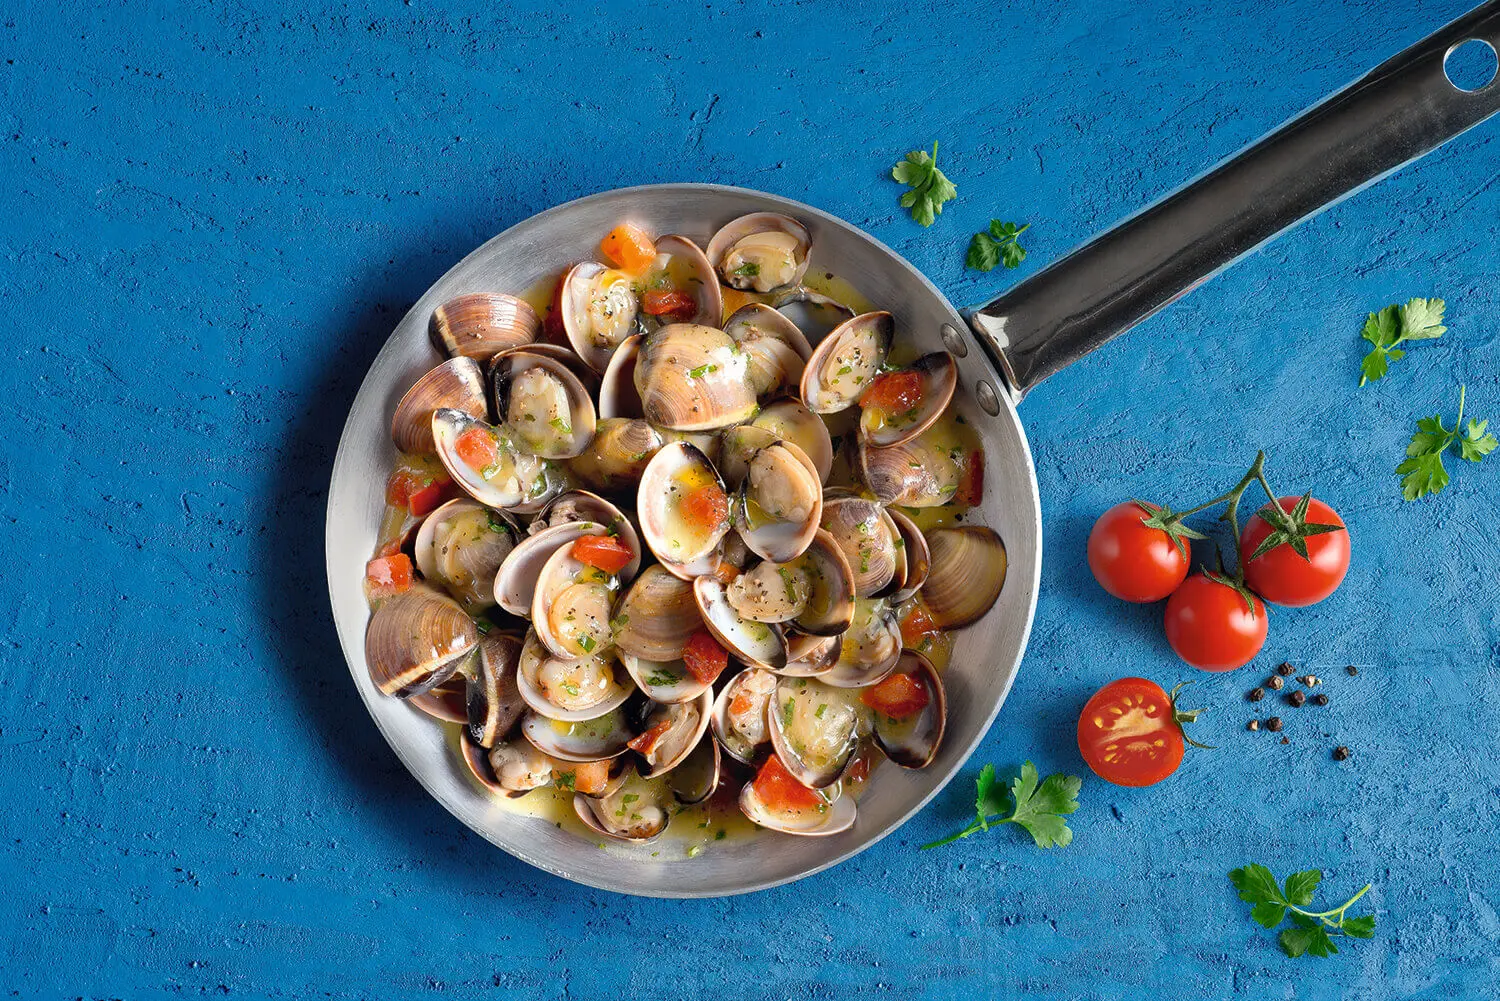 Stir-fried clams